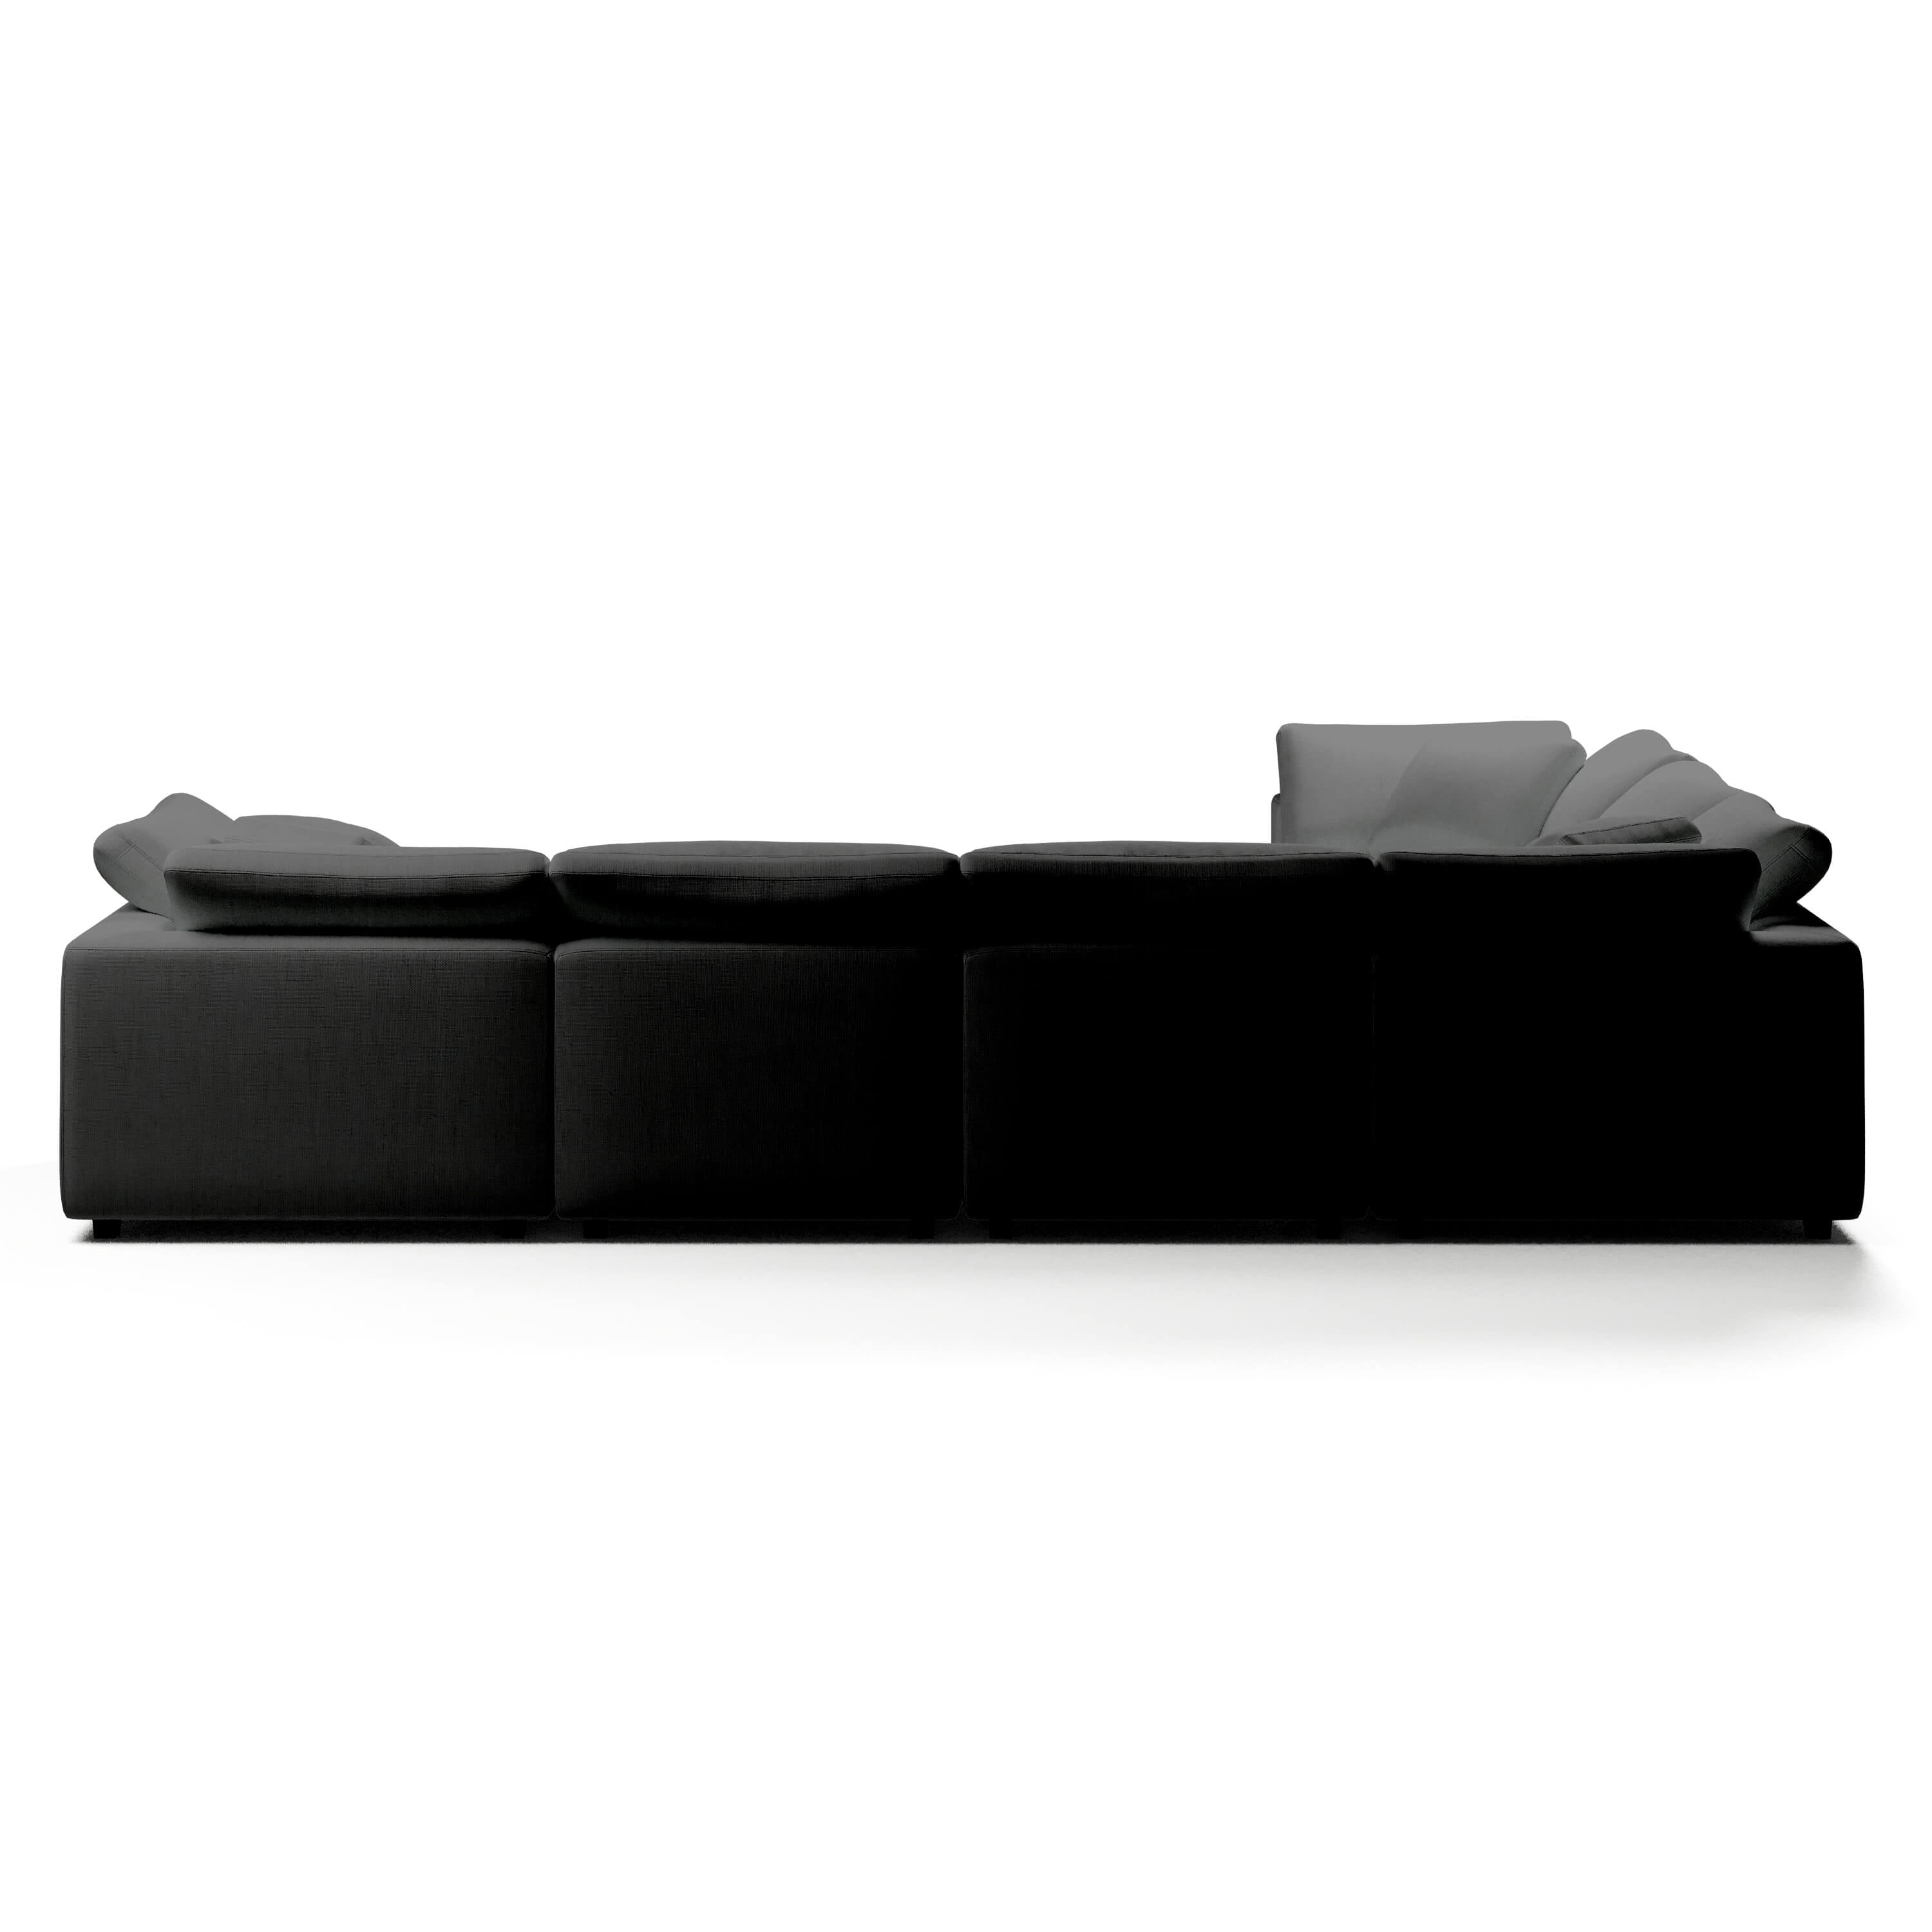 Comfy Modular Sofa - 6-Seater L-Sectional